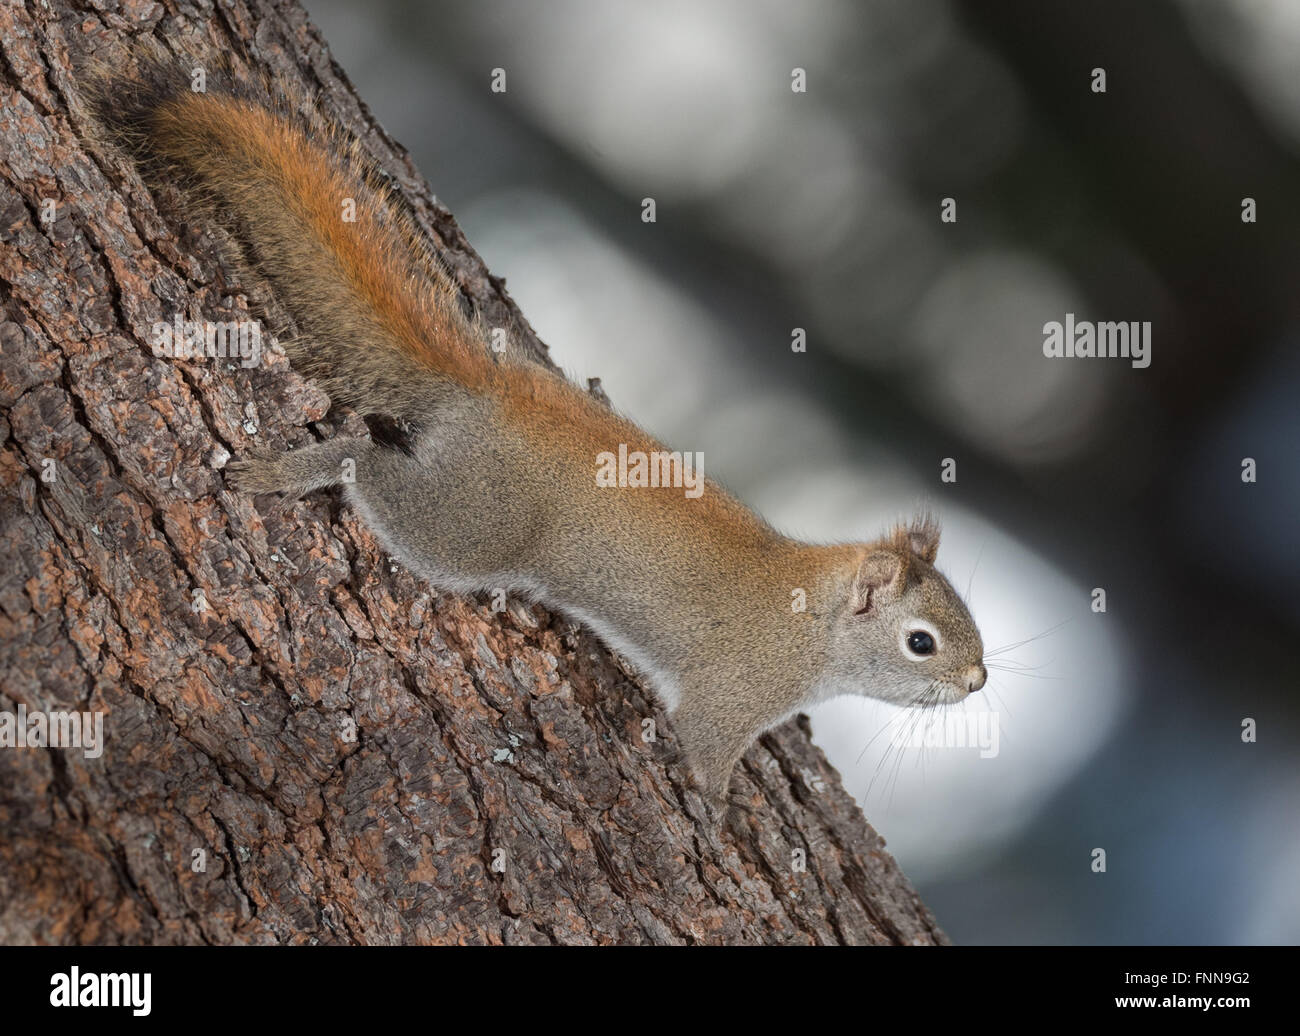 Feuriges orange Frühling rote Eichhörnchen, voller Länge auf einem Baum.  Schnelle kleine Waldbewohner rannten Bäume in einem Wald Stockfoto